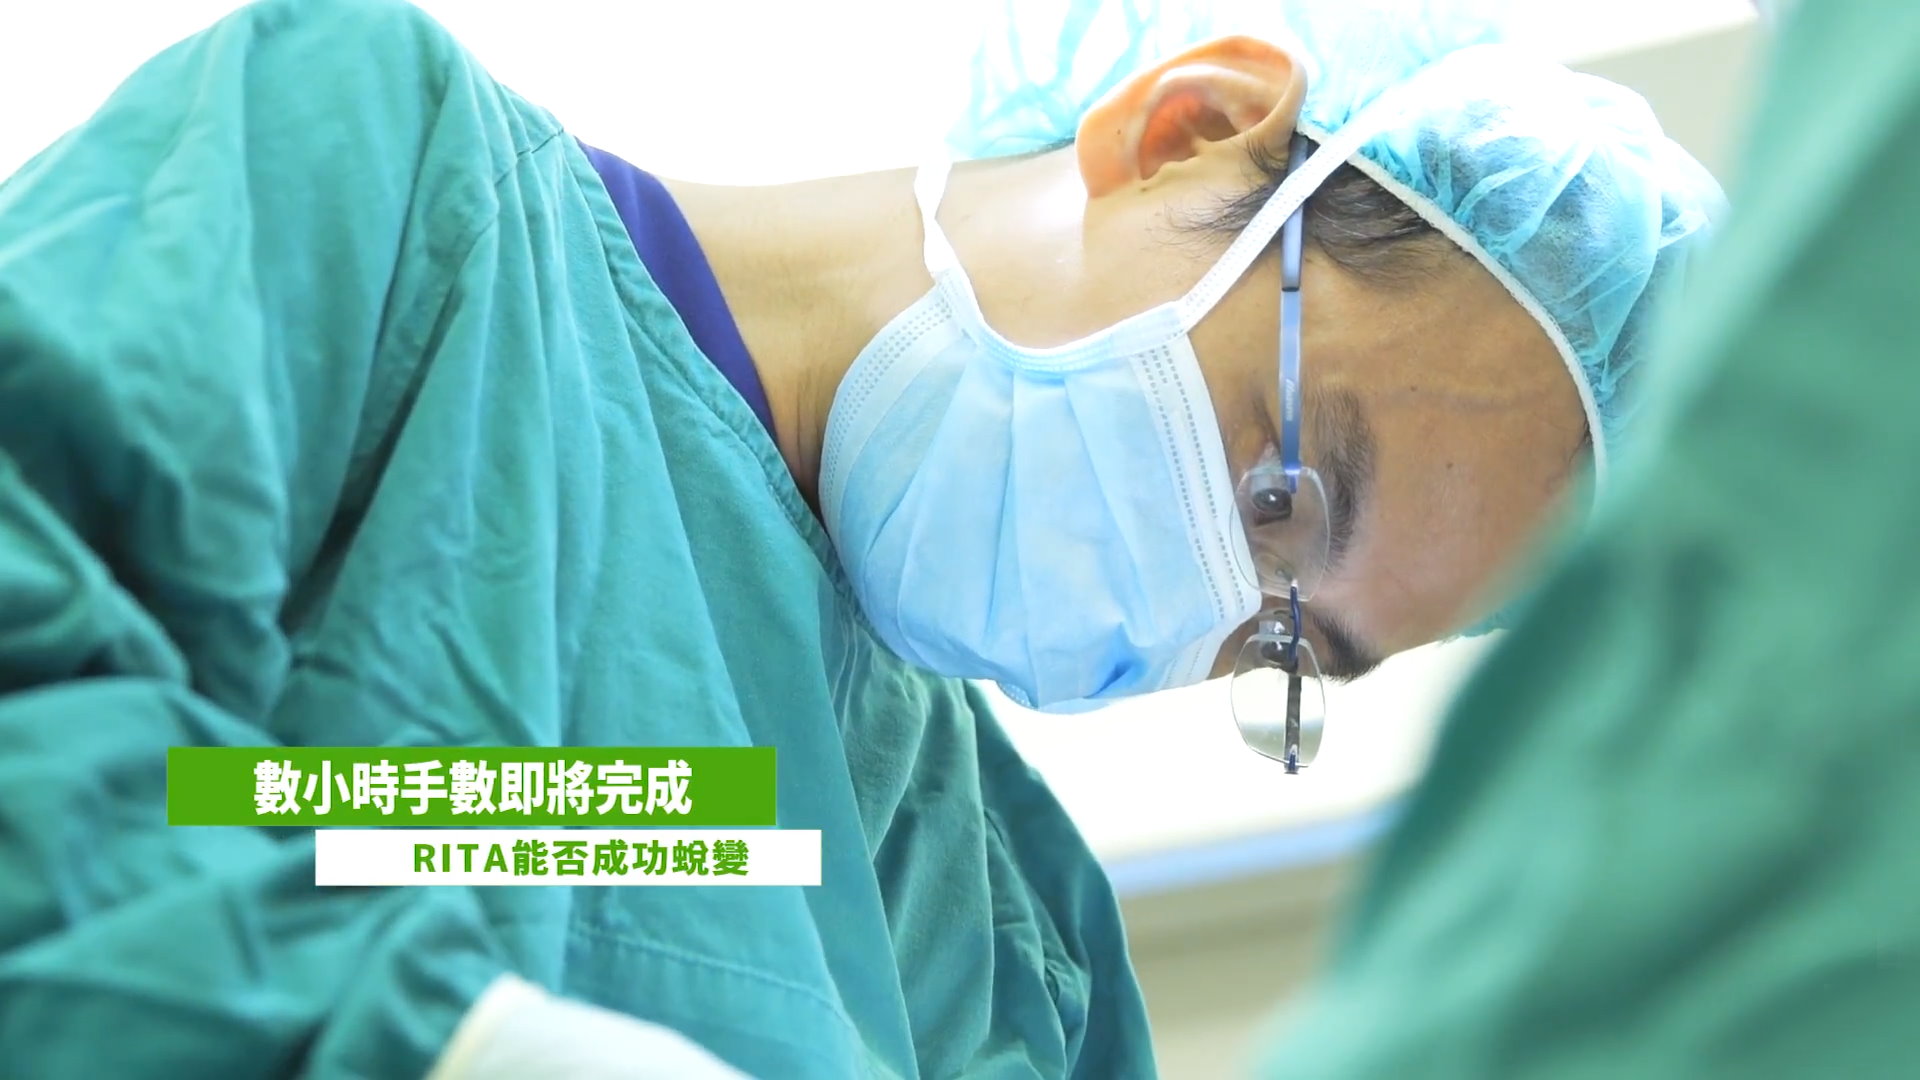 台北隆鼻手術整形專業醫師-吳孟穎醫師